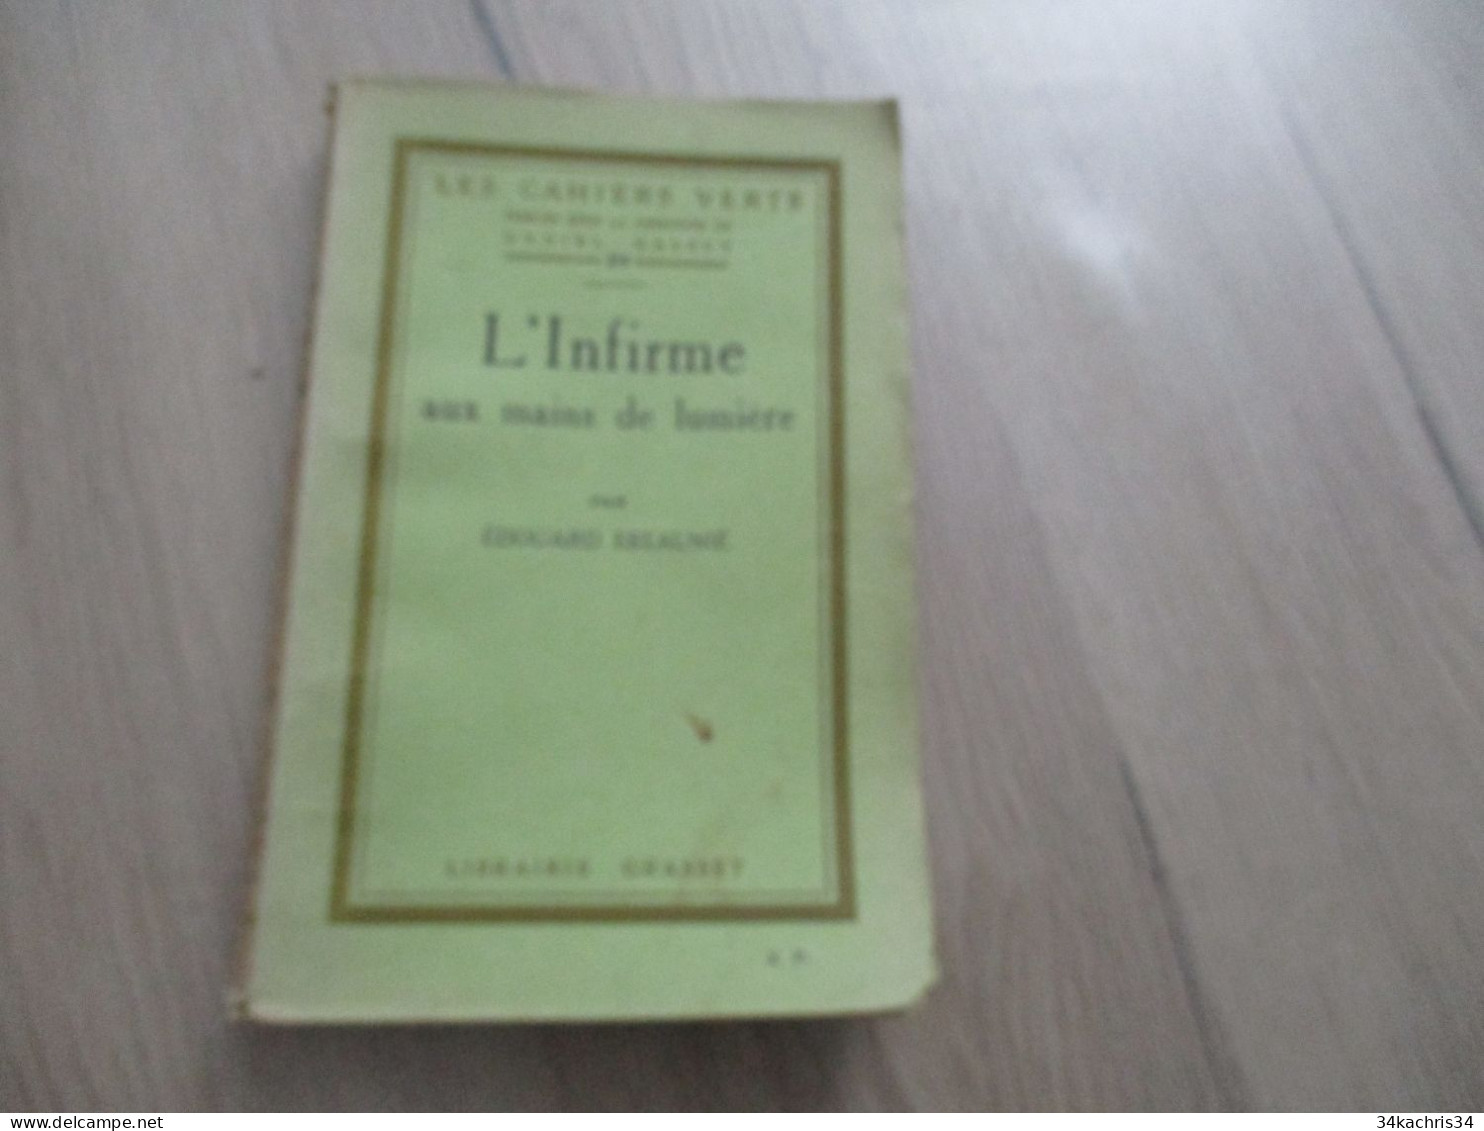 Envoi E. ESTAUNIE L'infirme Aux Mains De Lumière Edition Originale Service De Presse Cahiers Verts Halévy Grasset 176p - Libros Autografiados